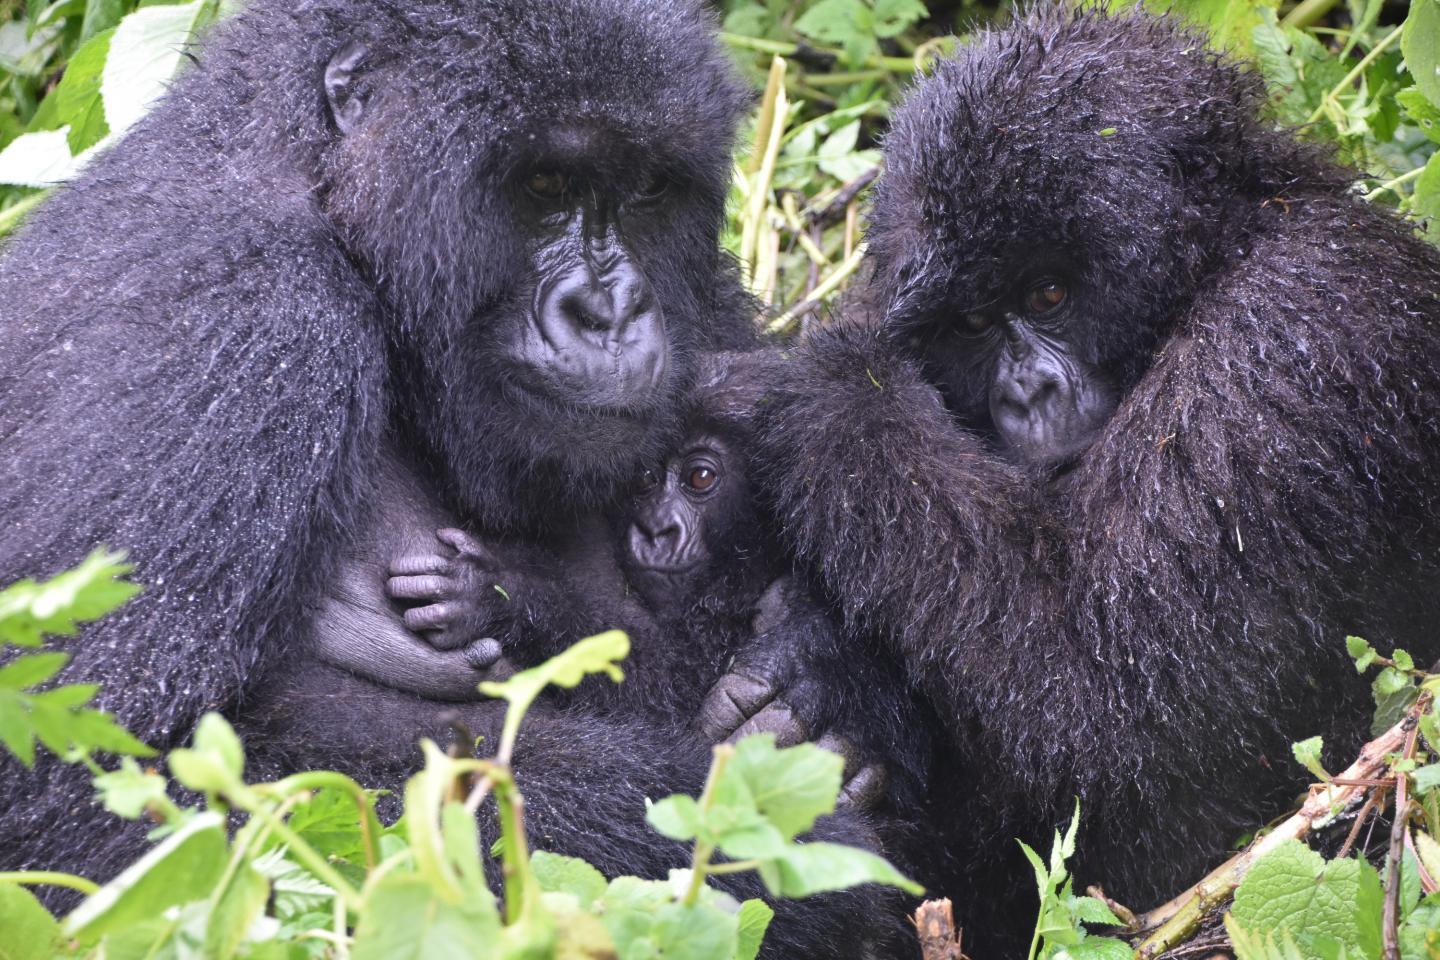 保护工作的成功为濒临灭绝的山地大猩猩带来了新的挑战